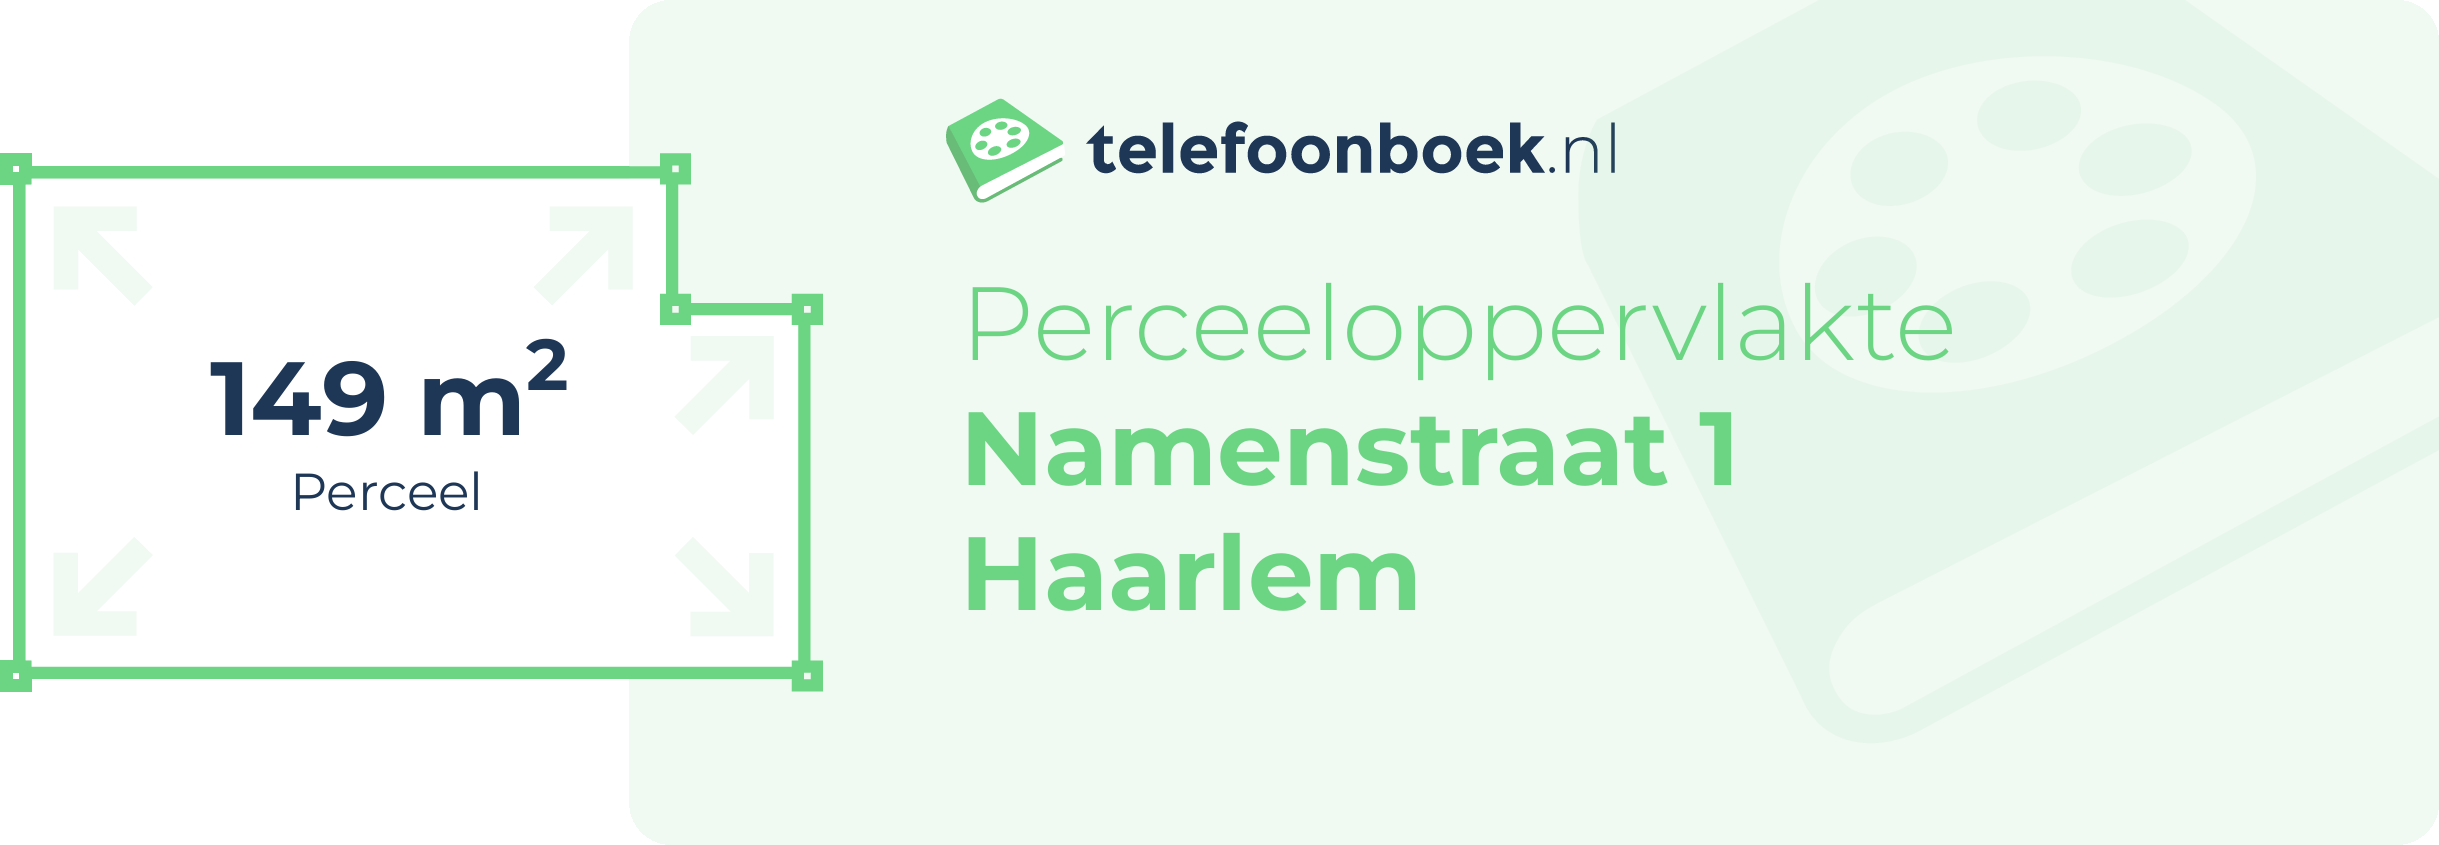 Perceeloppervlakte Namenstraat 1 Haarlem